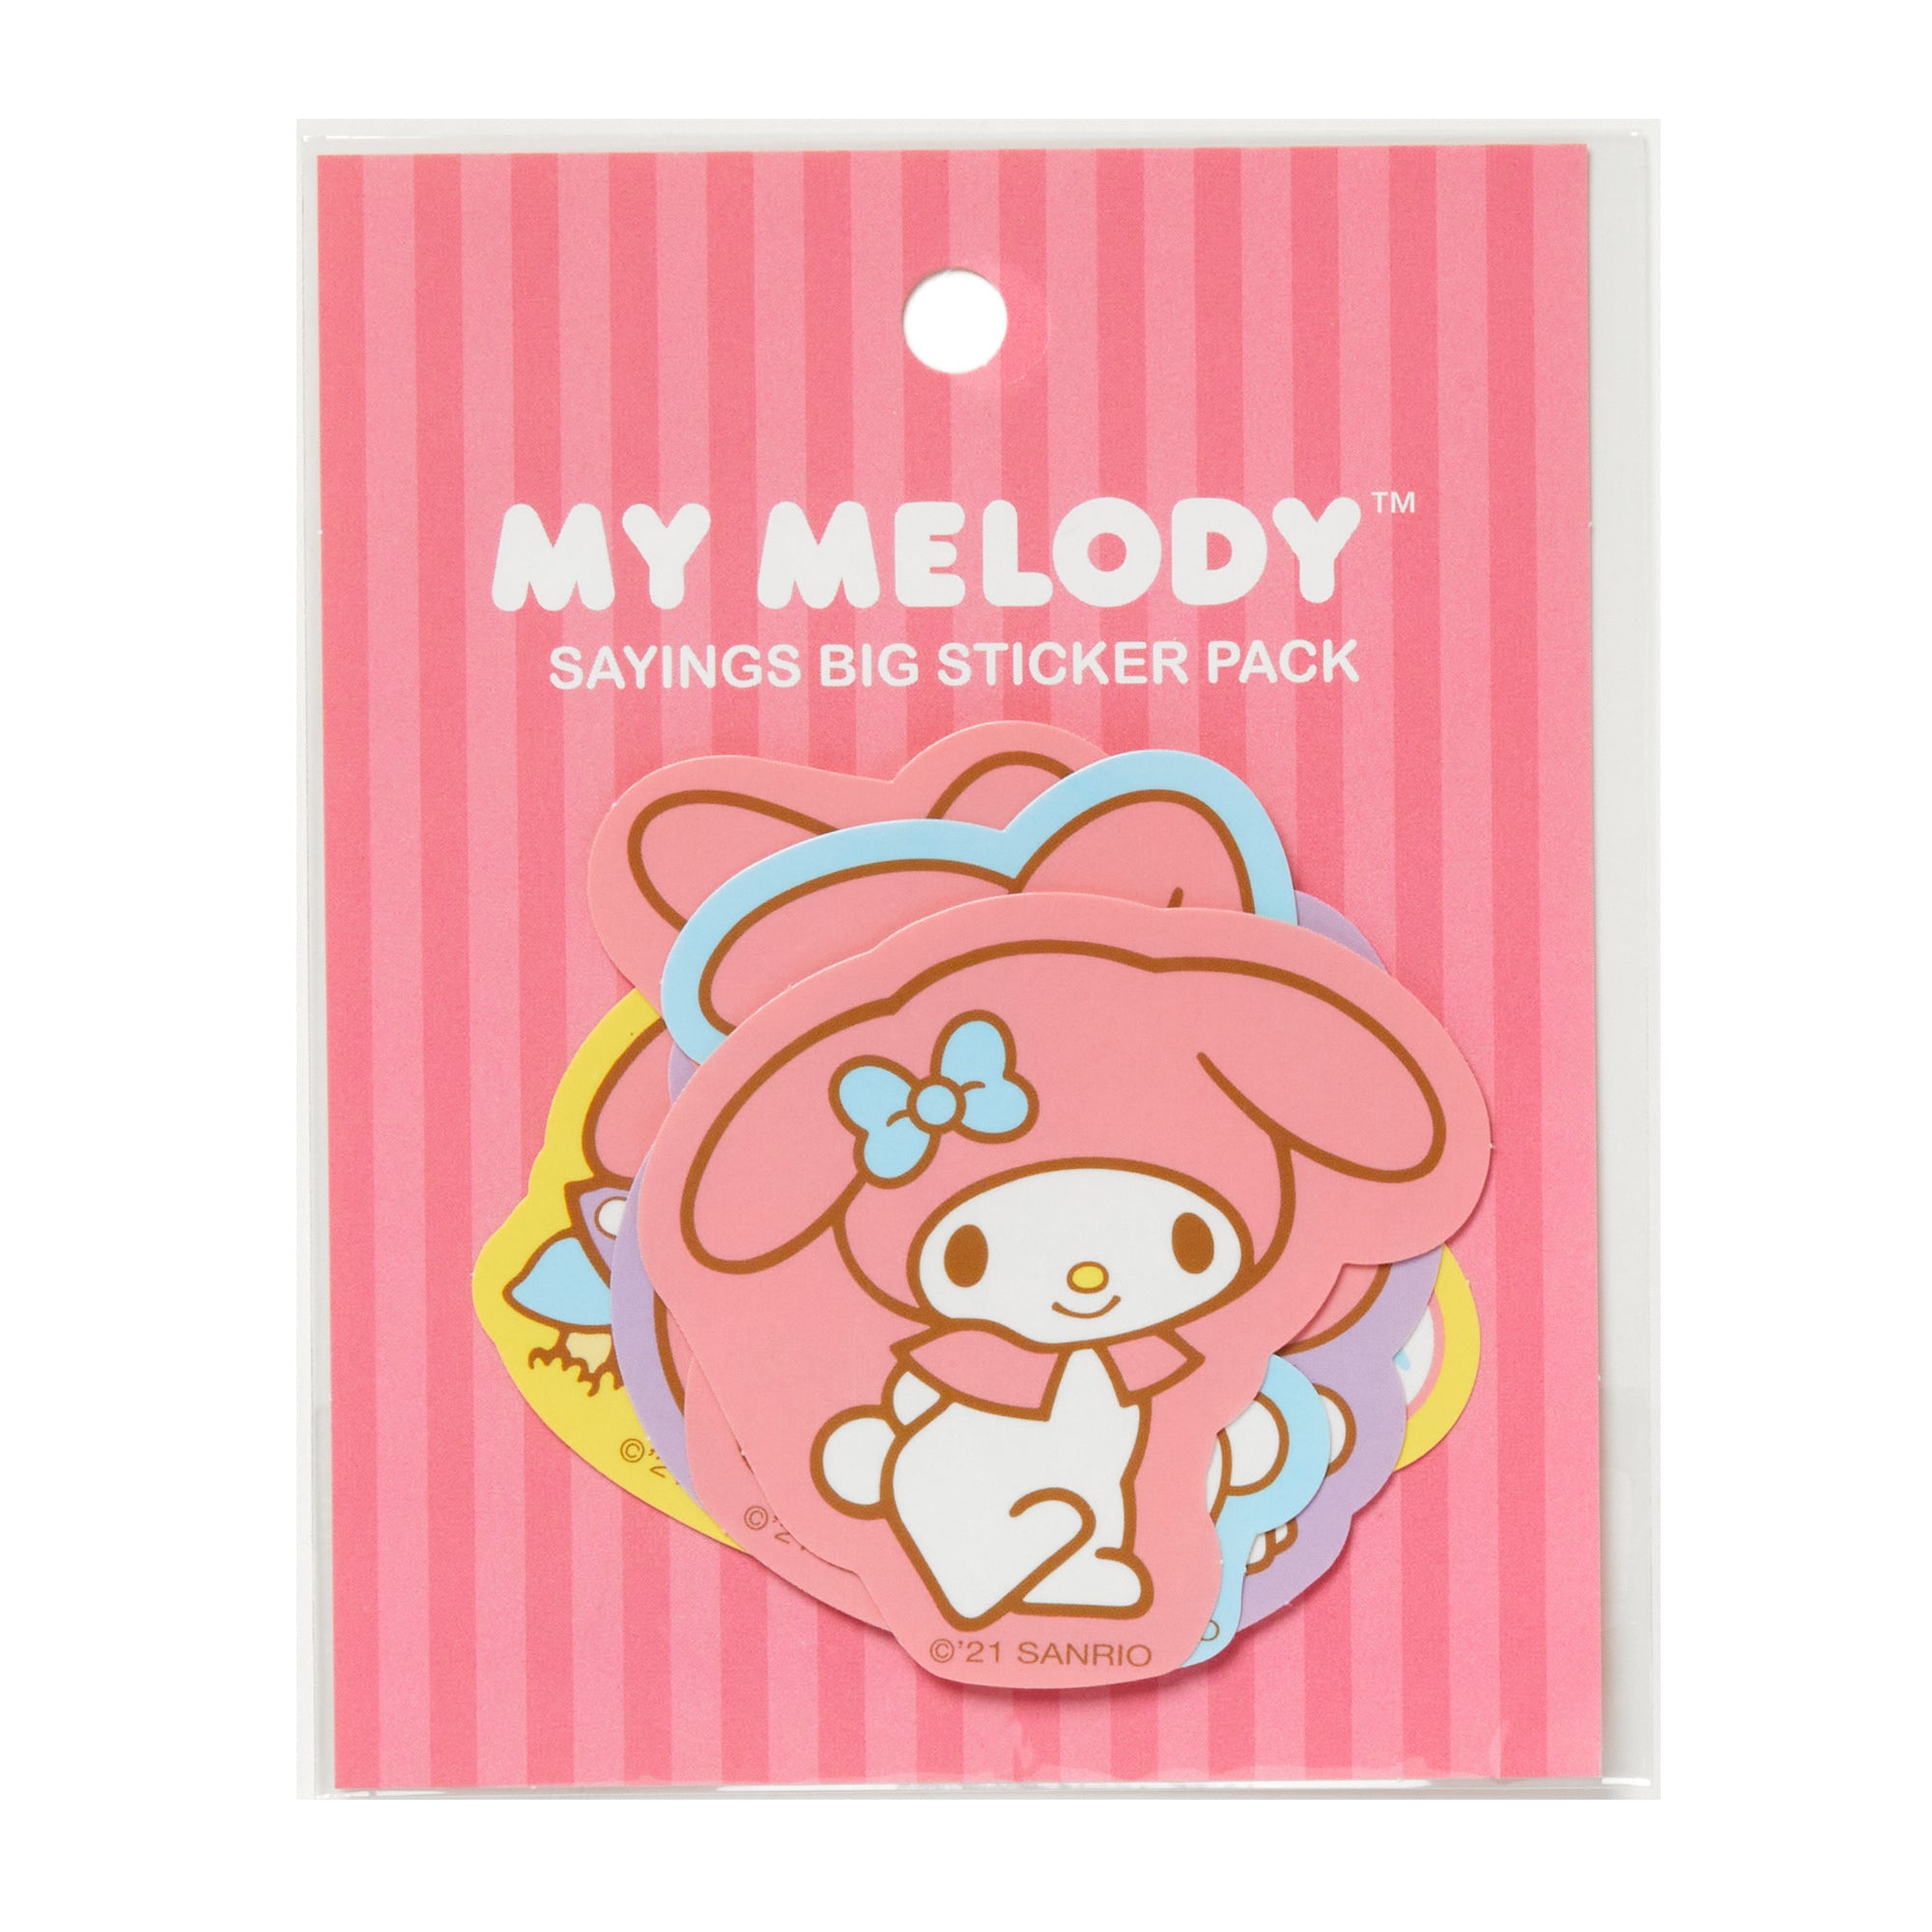 My Melody Sayings Big Sticker Pack Stationery HUNET USA   